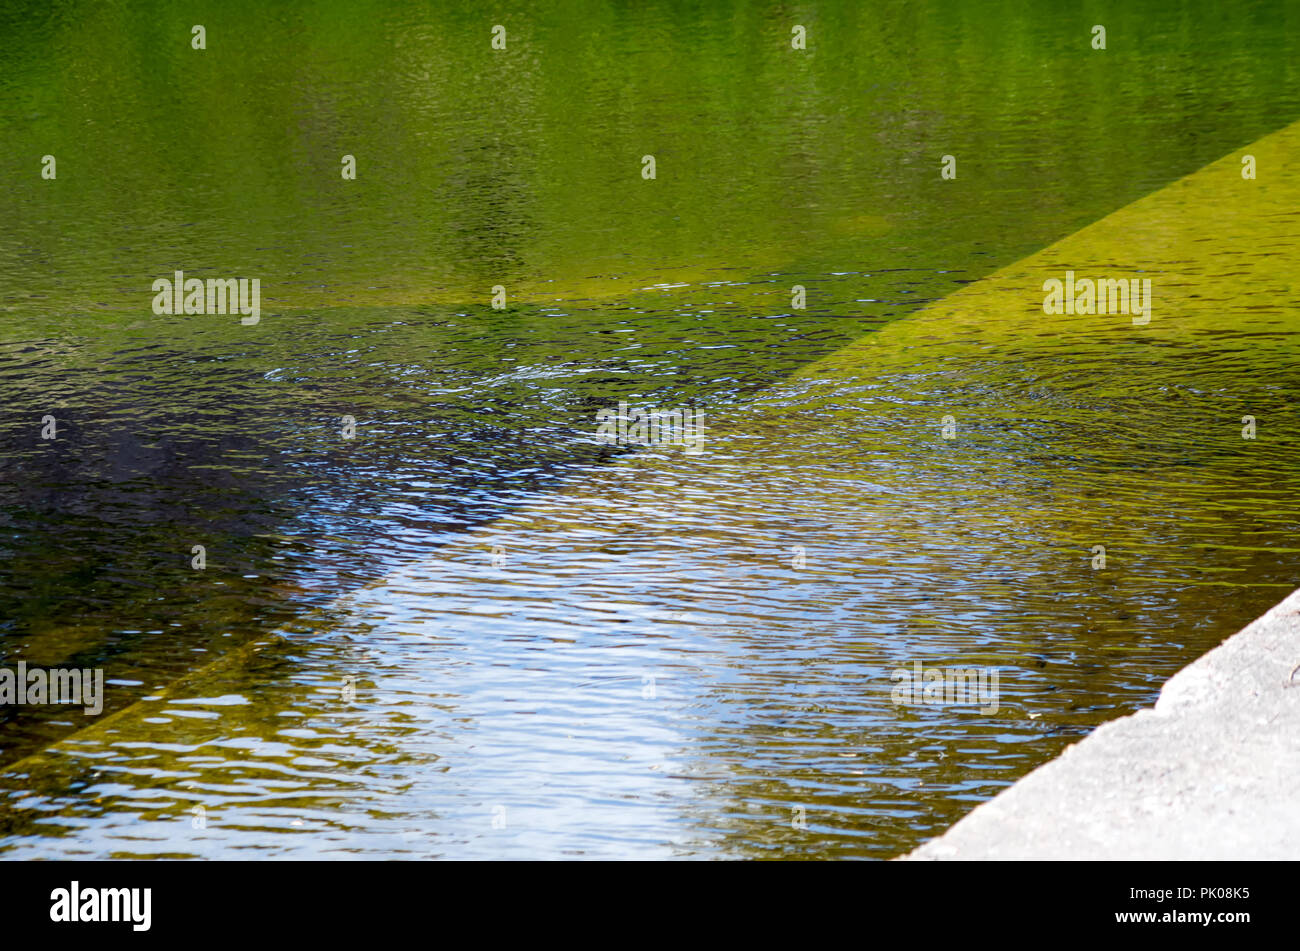 Verde, Oro e ambra colori riflessi nella superficie ondulata di un corpo di acqua, sfondo, visualizzare uno. Foto Stock